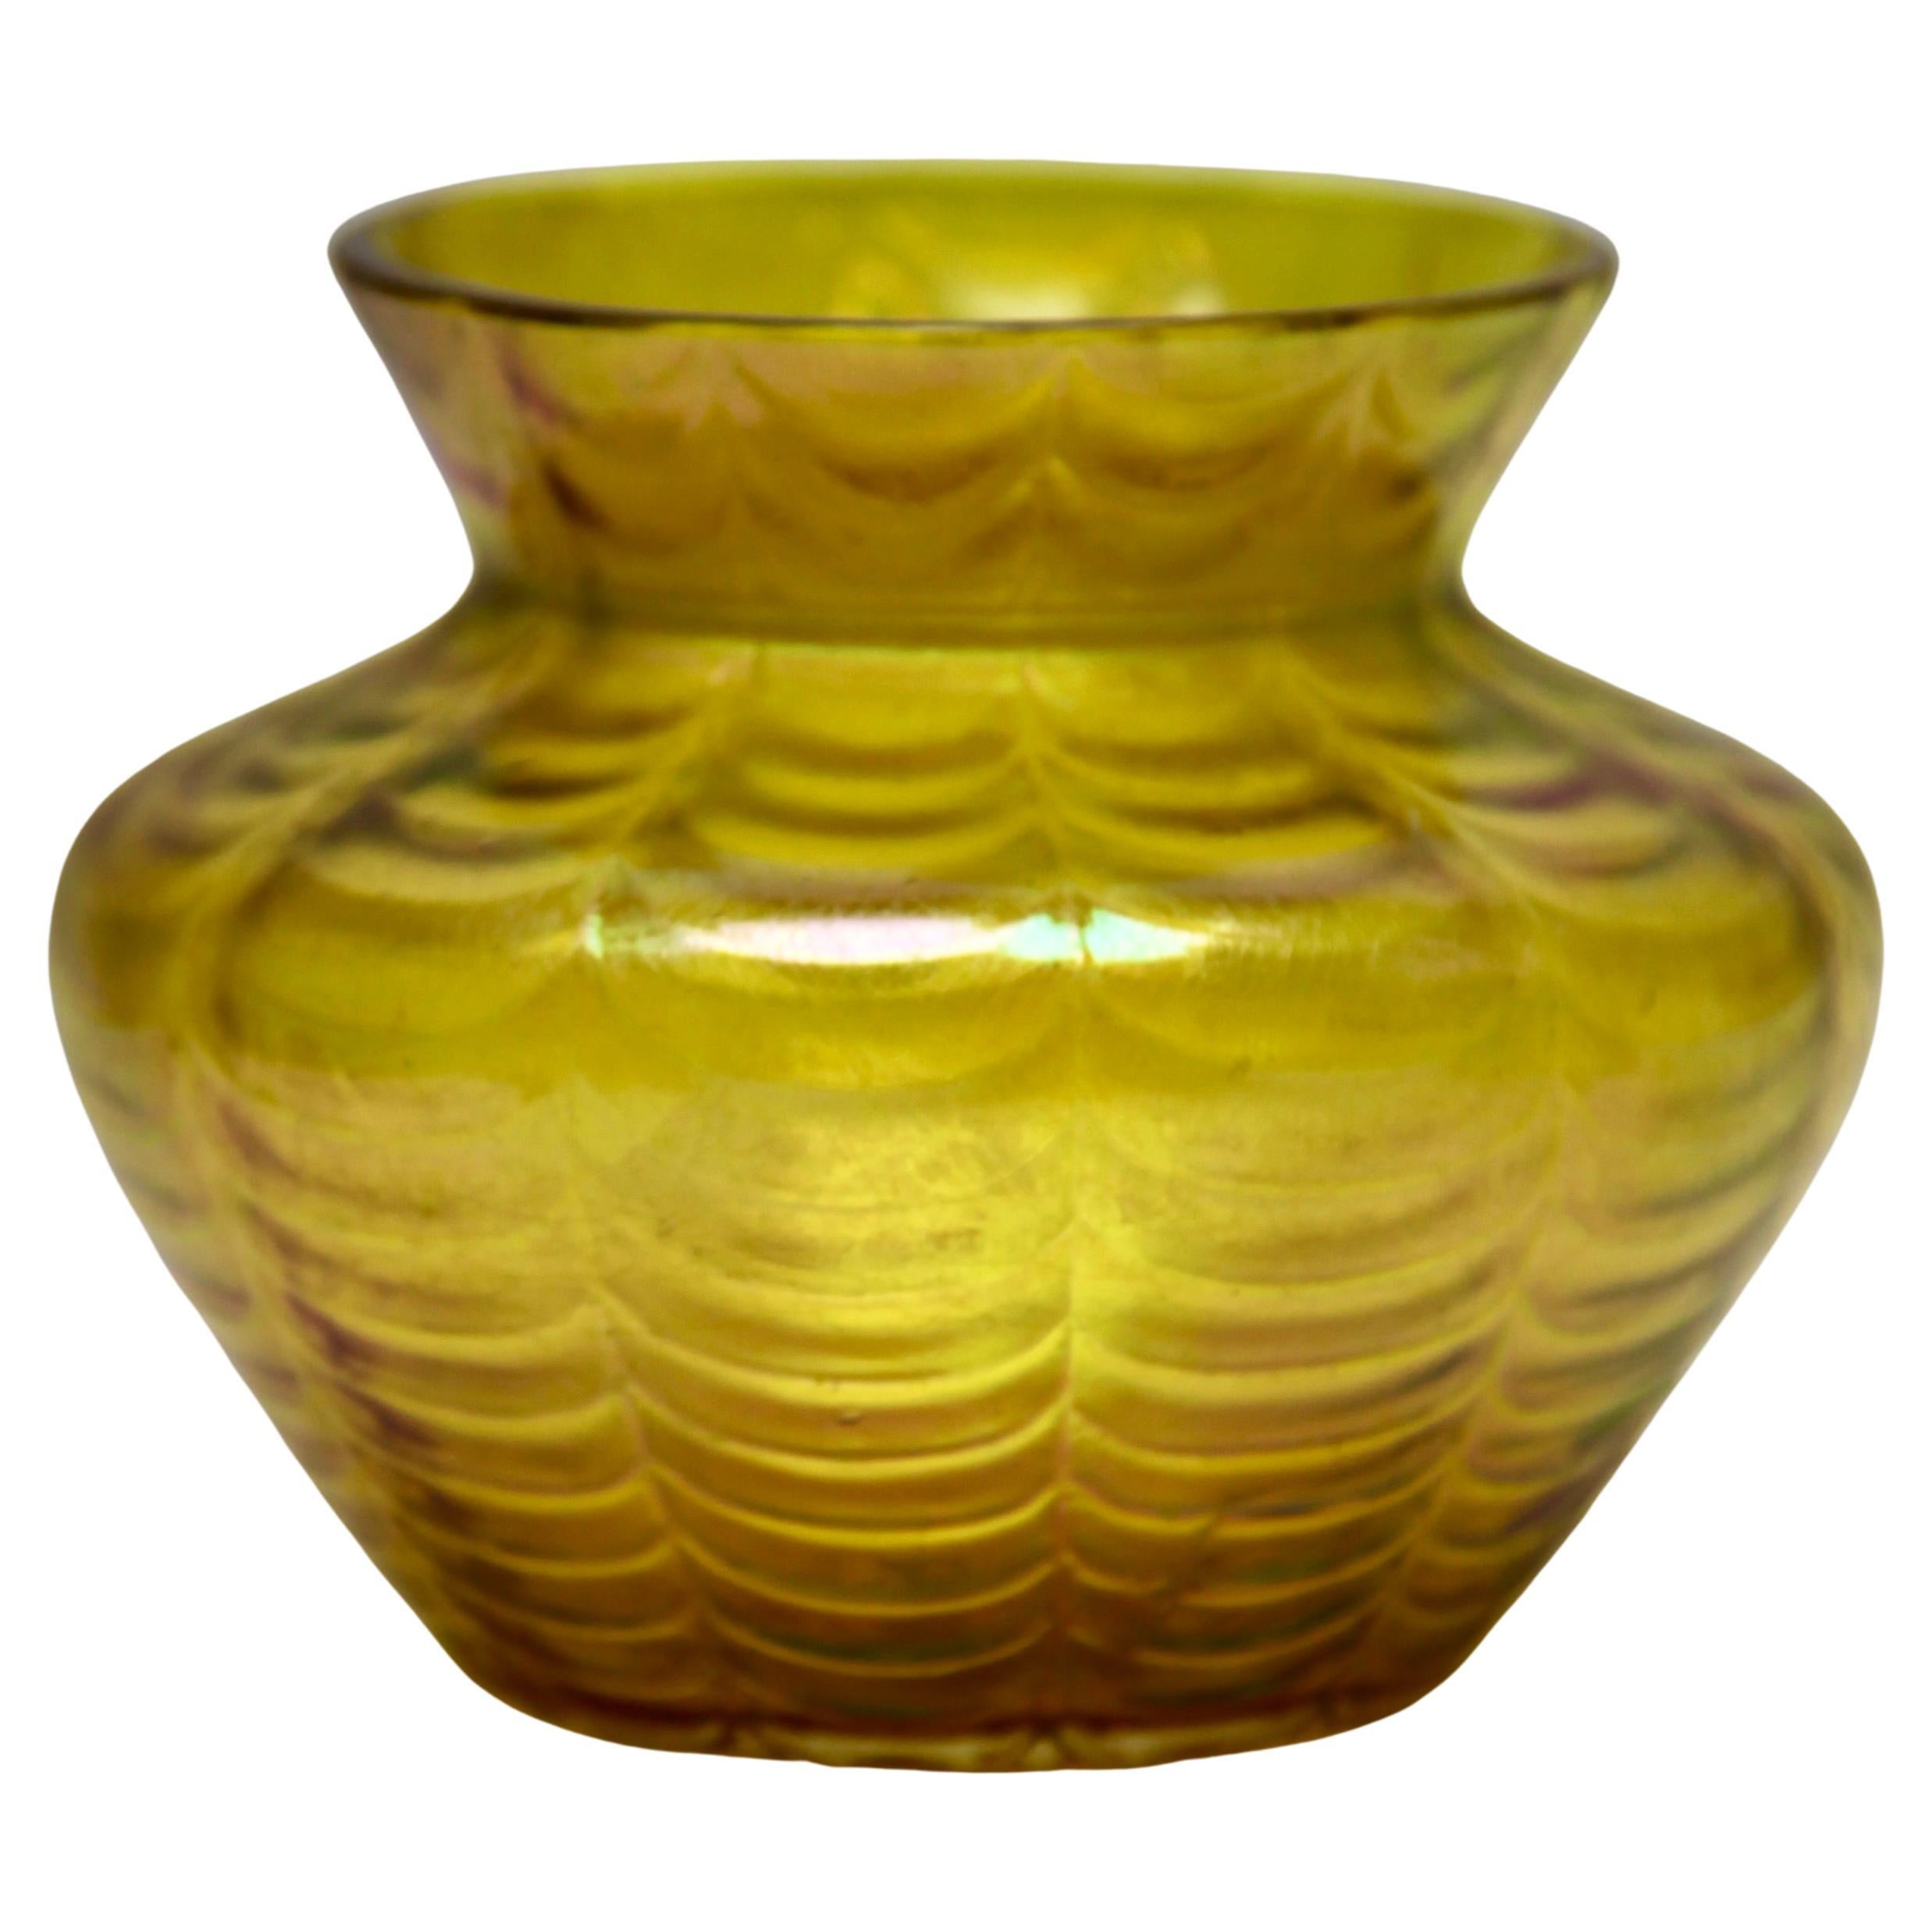 Jugendstil-Vase mit schmiedeeisernen Details aus irradiiertem Glas, 1900er Jahre